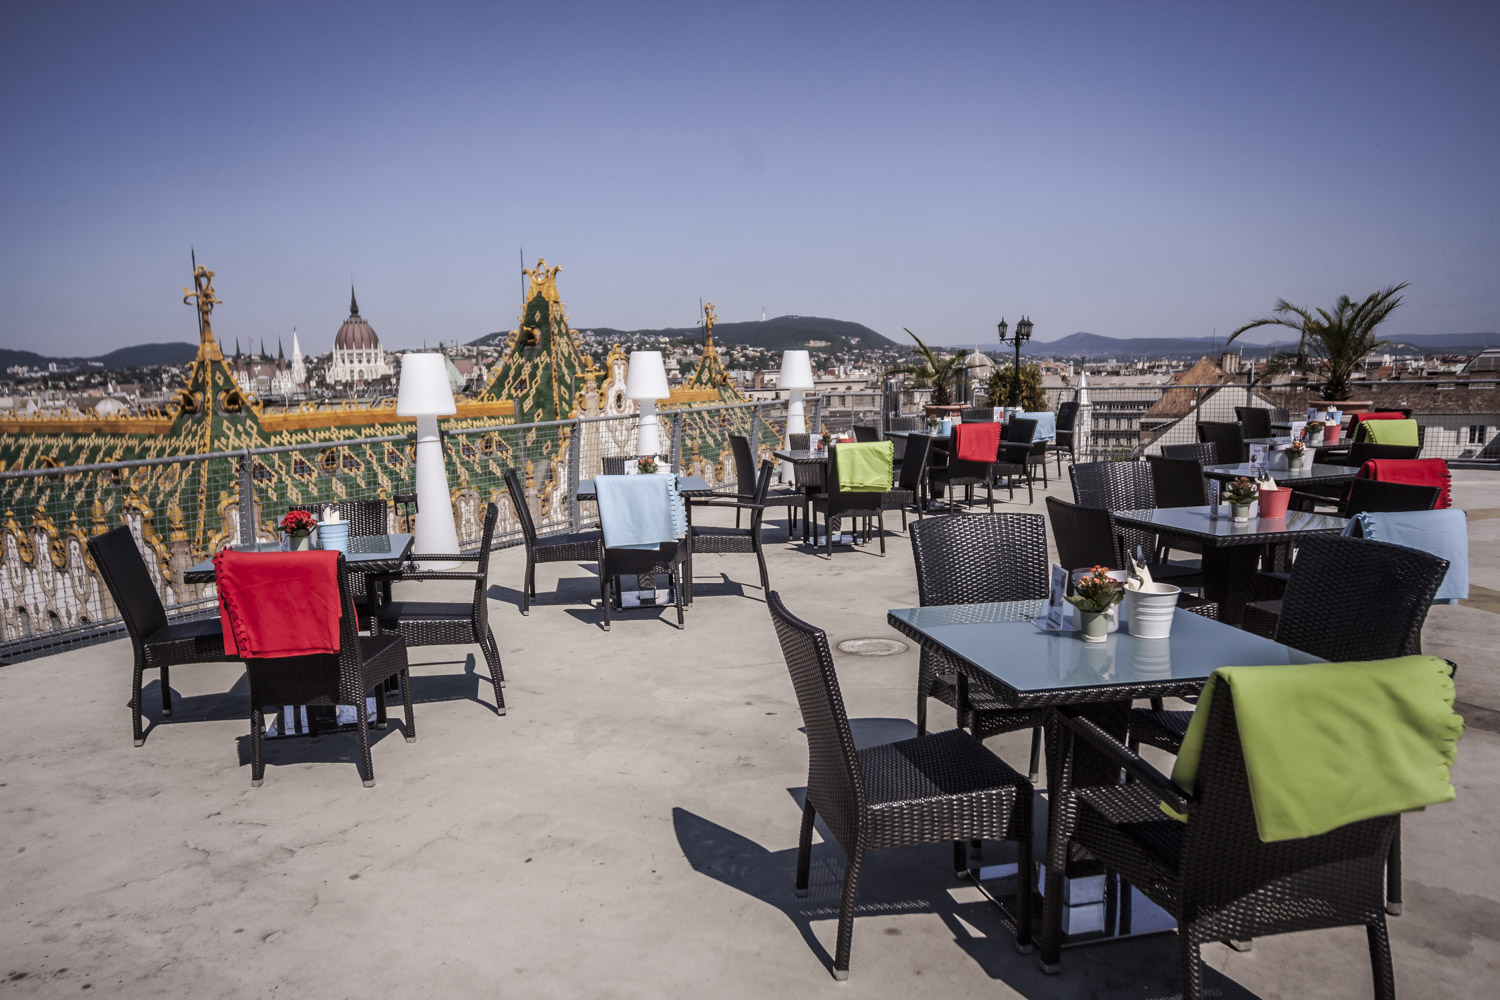 Egy hamburger a tetőn? – Budapest legújabb rooftop terasza a Hotel Presidenté